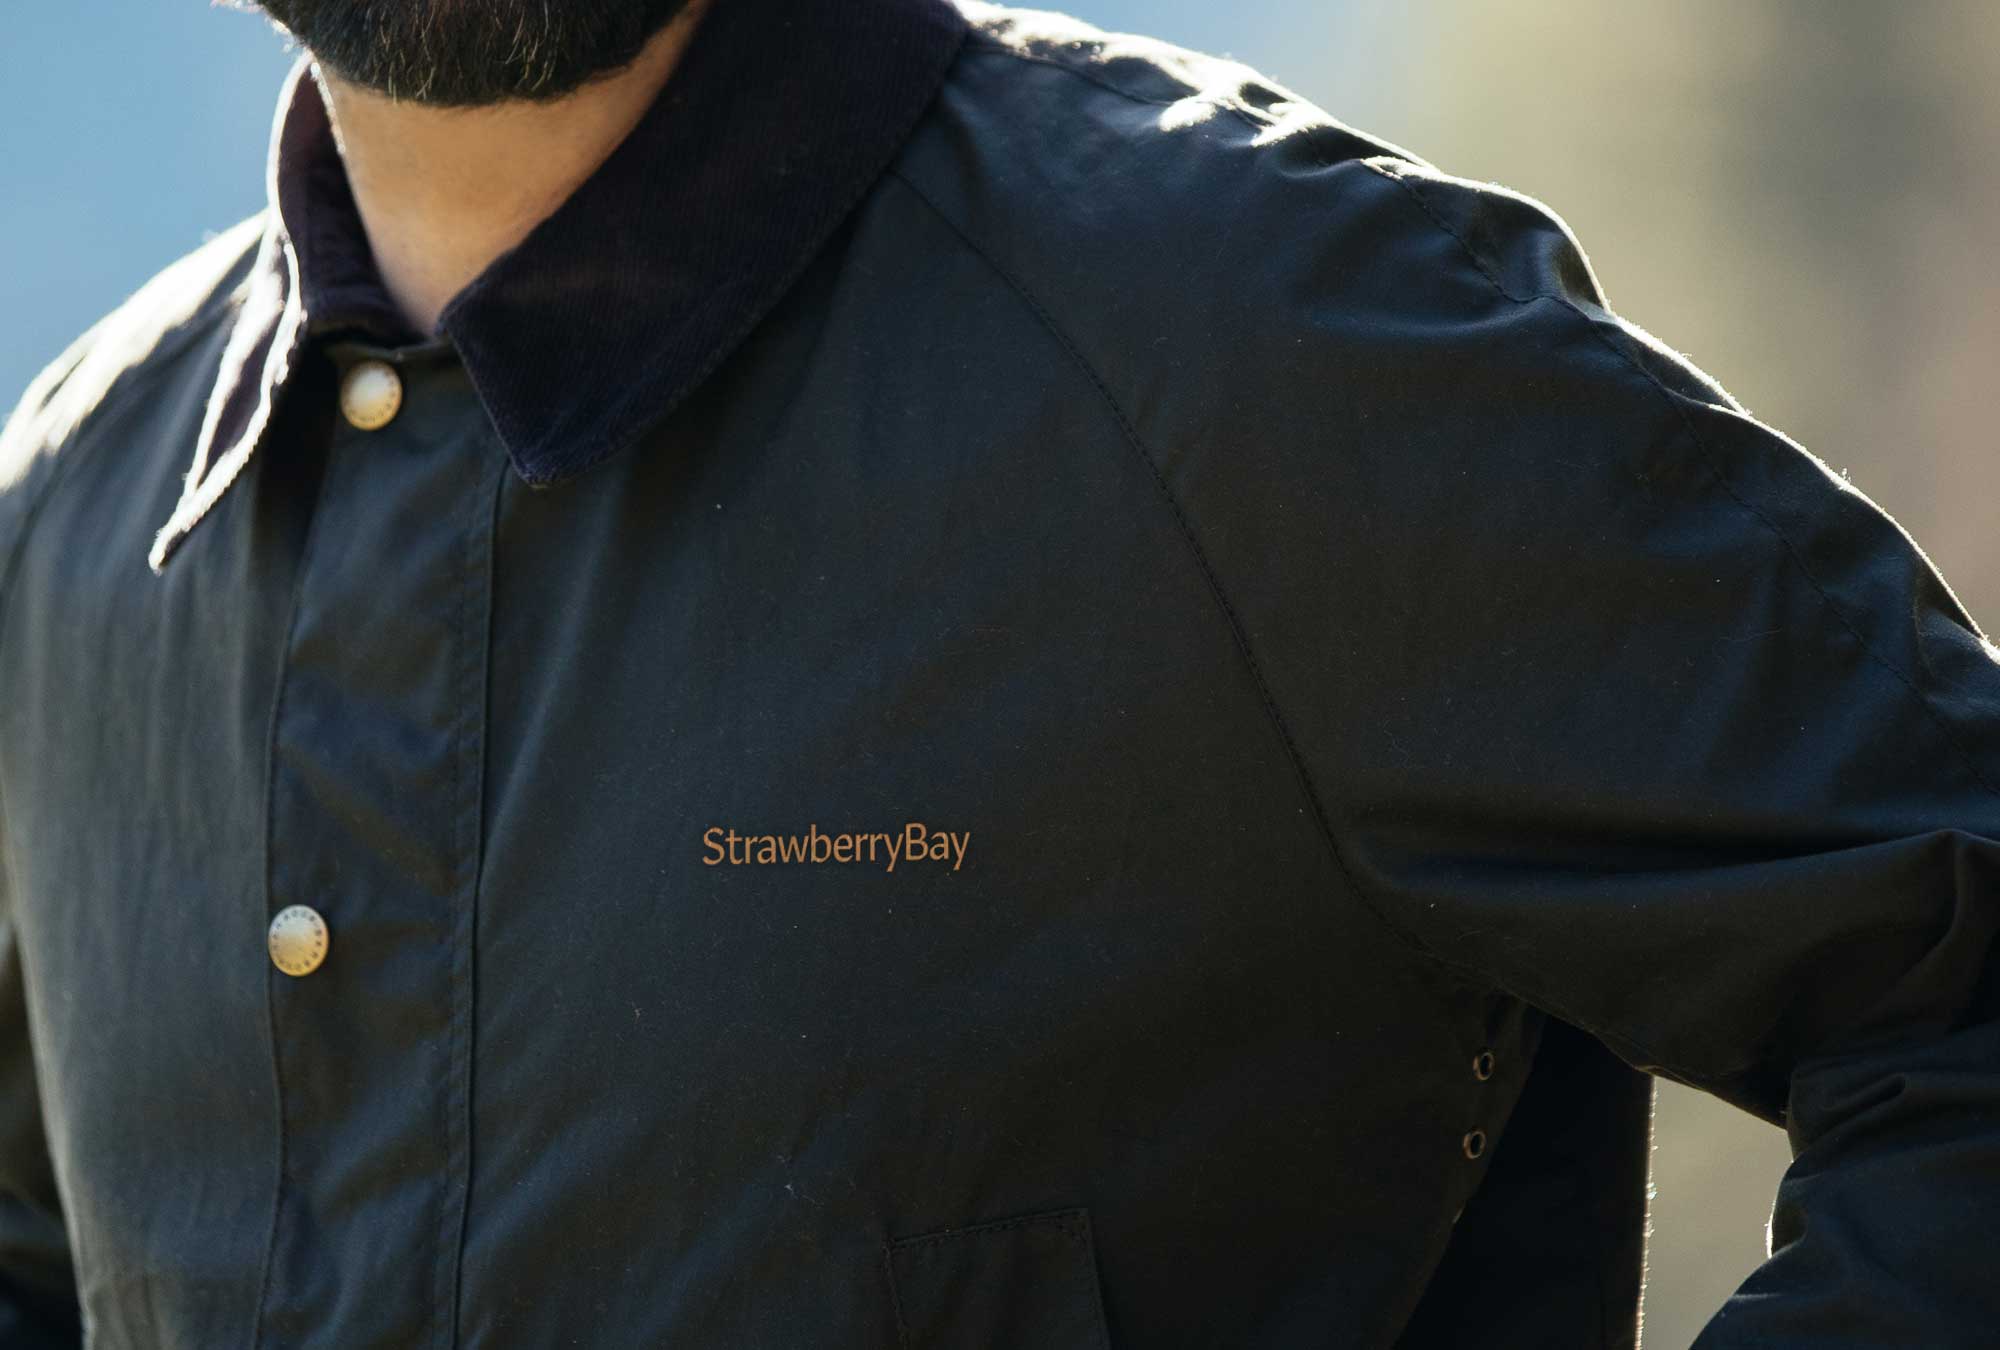 strawberrybay_jacket